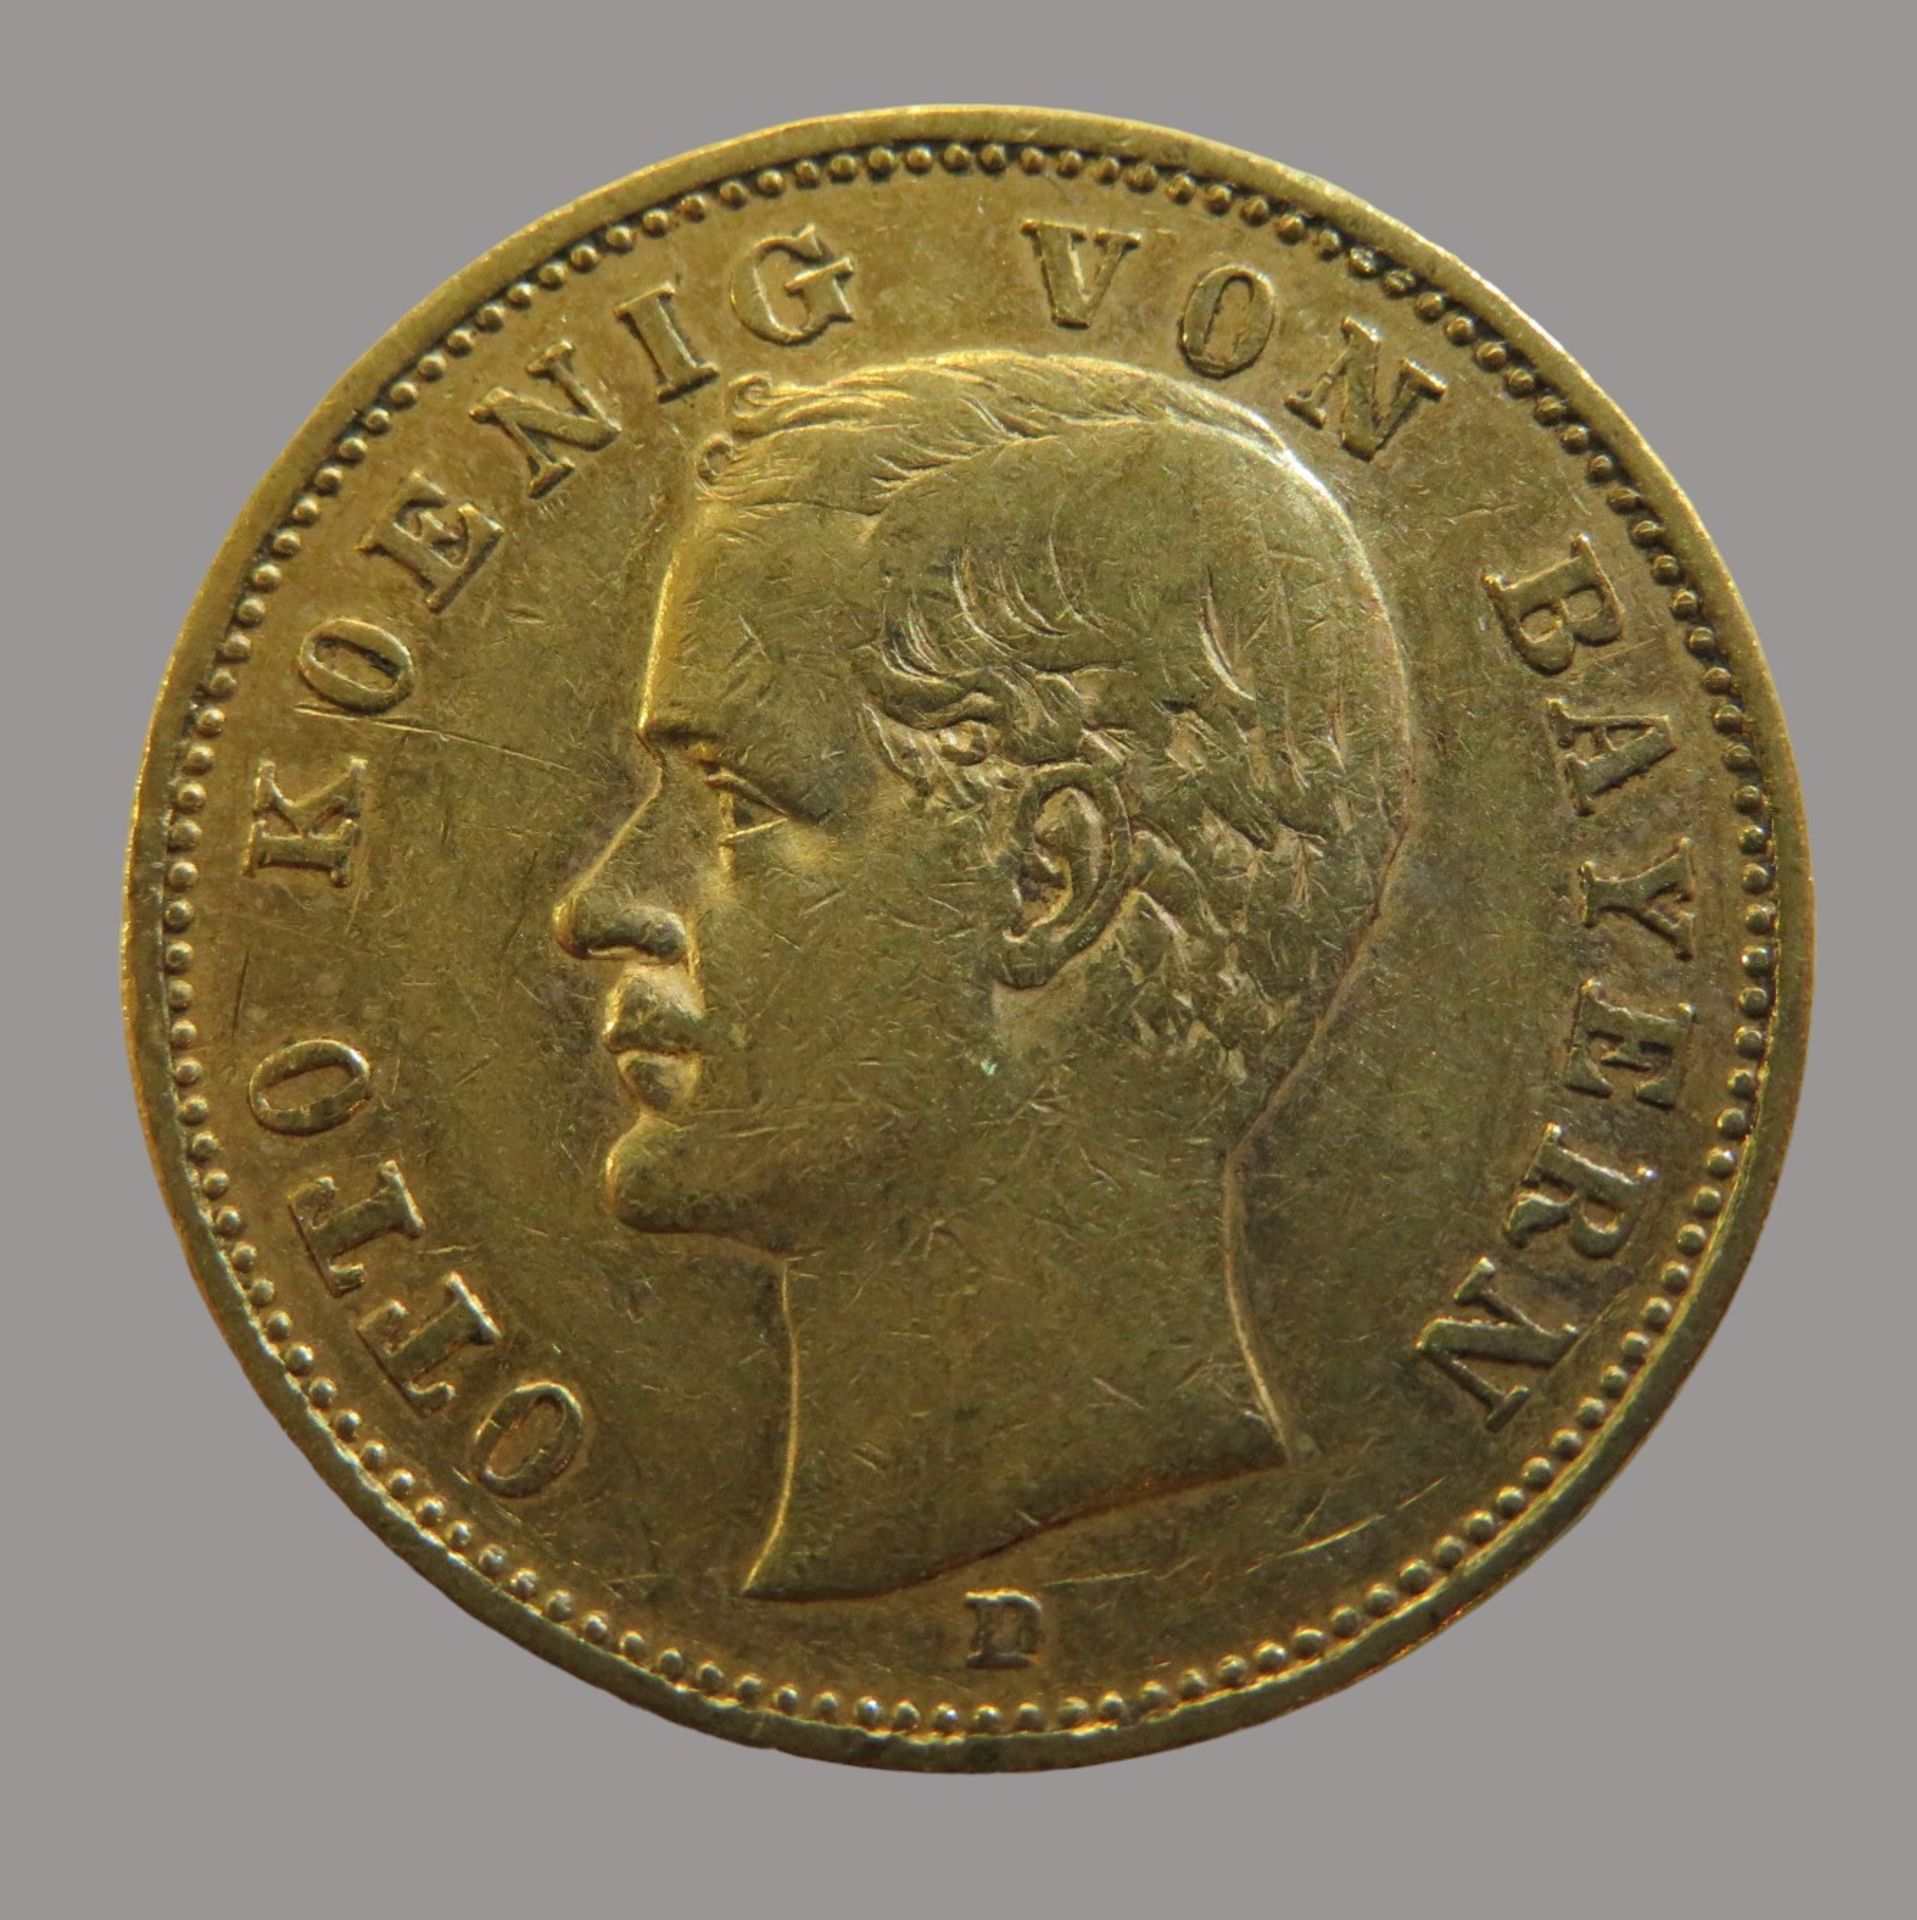 Goldmünze, 20 Mark, Otto König von Bayern, 1895D, Gold 900/000, 7,96 g, J 200, Erhaltungszustand SS